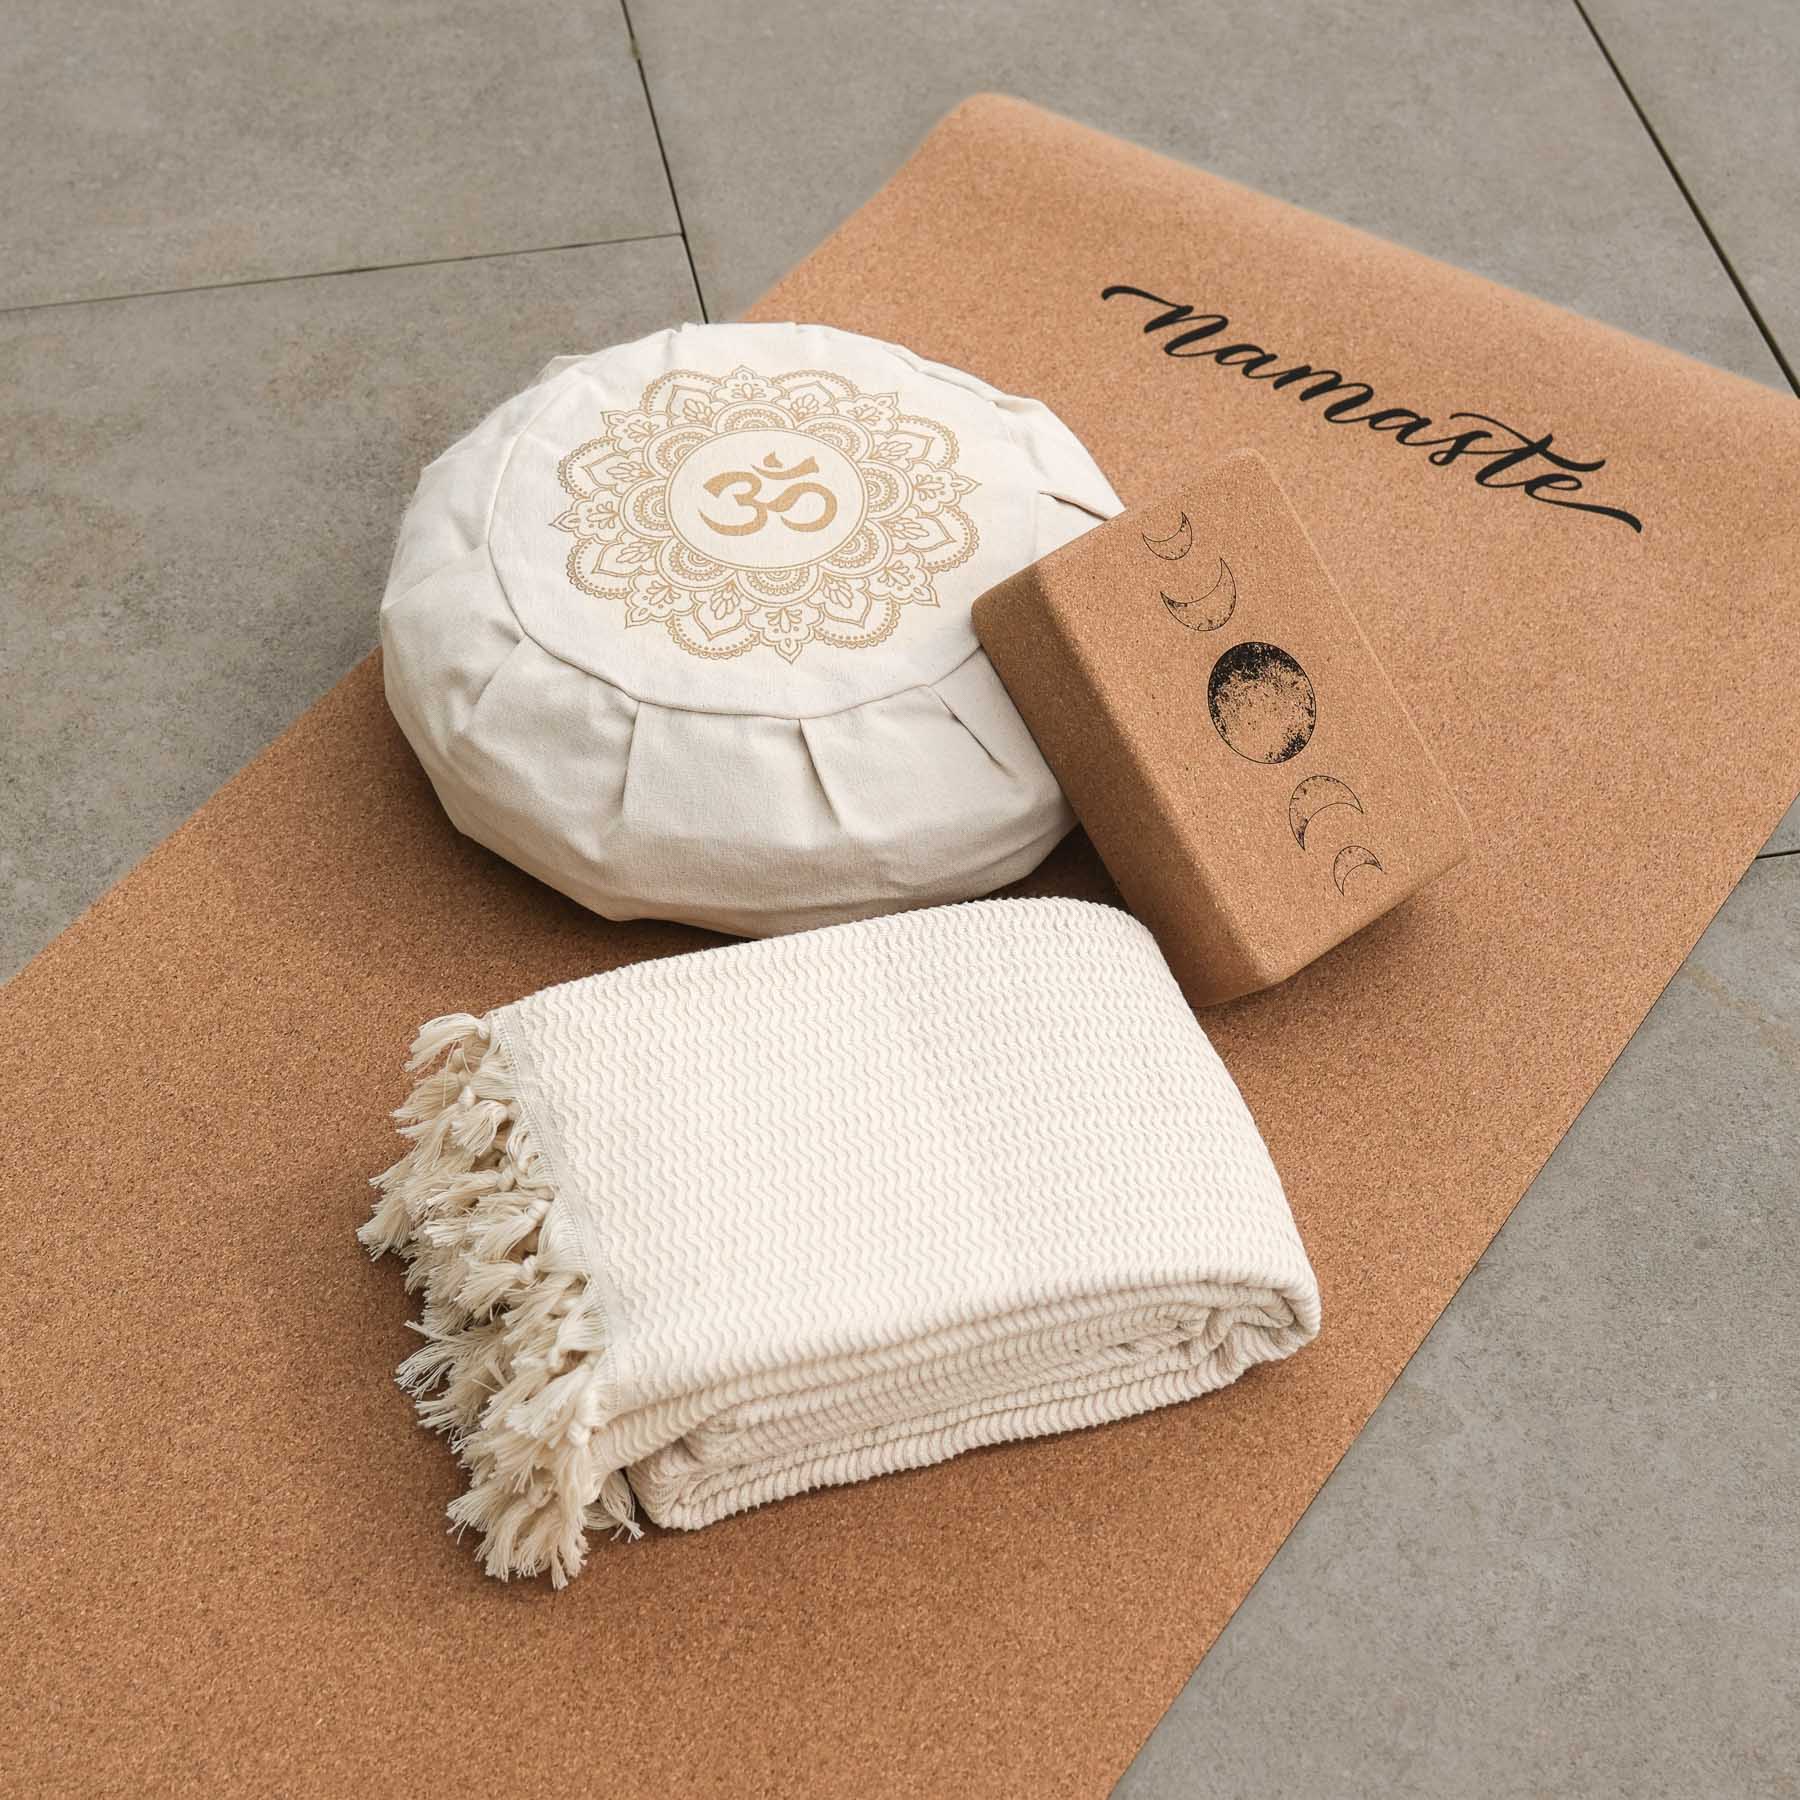 Coperta yoga Relax in cotone organico sabbia